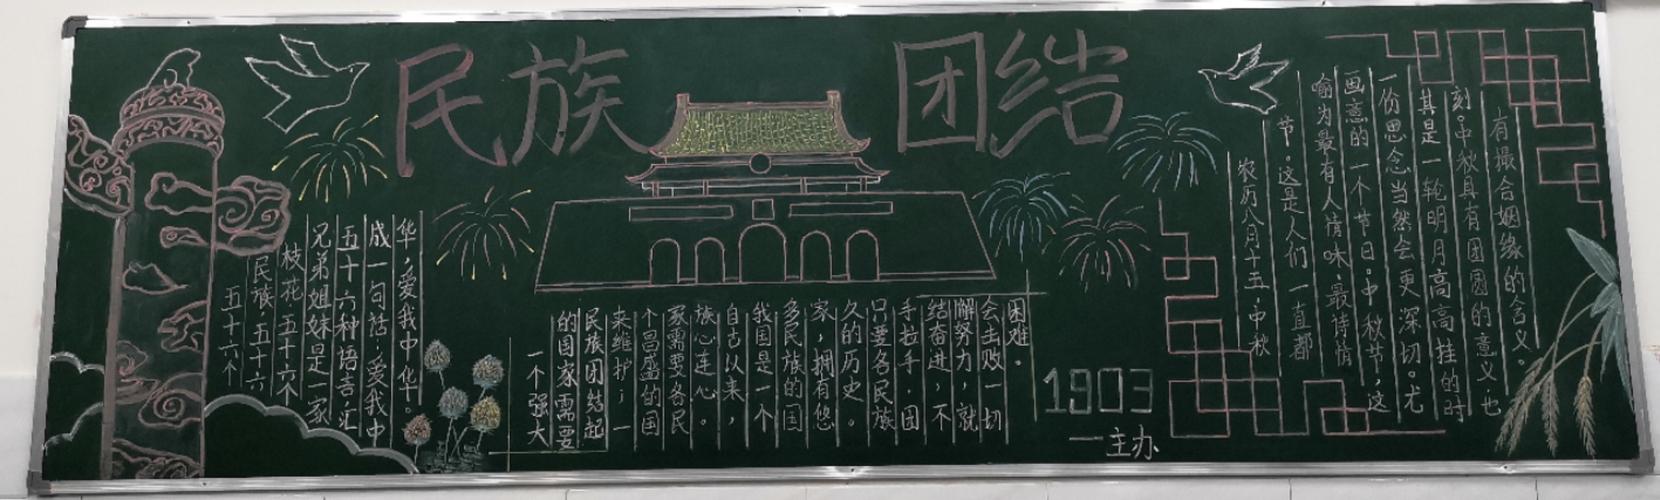 双牌二中民族团结进步主题黑板报评比活动揭晓